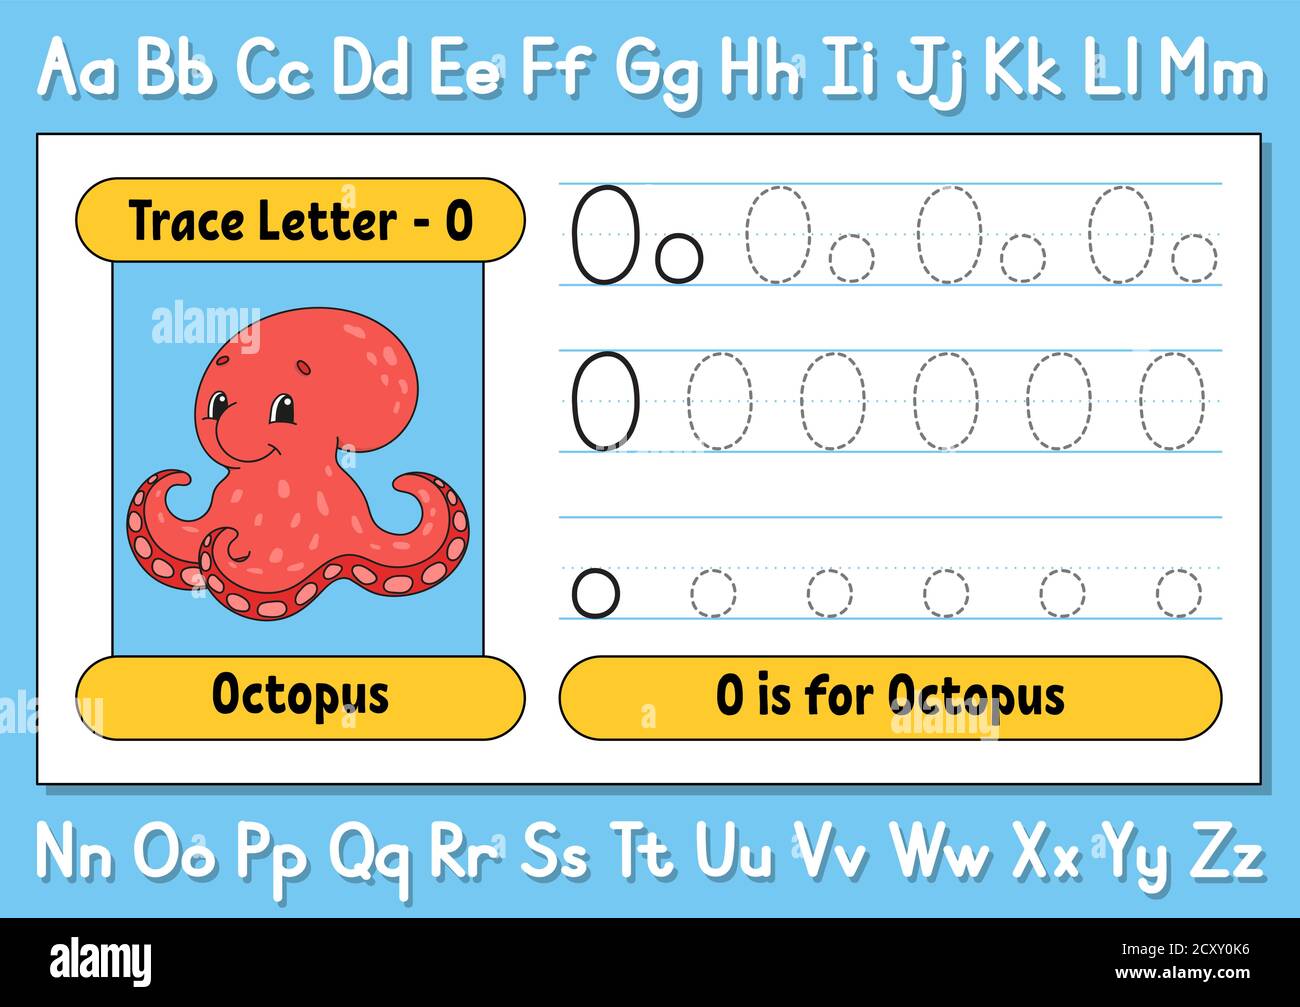 Imparare l'Alfabeto: Materiale Gratuito per Bambini